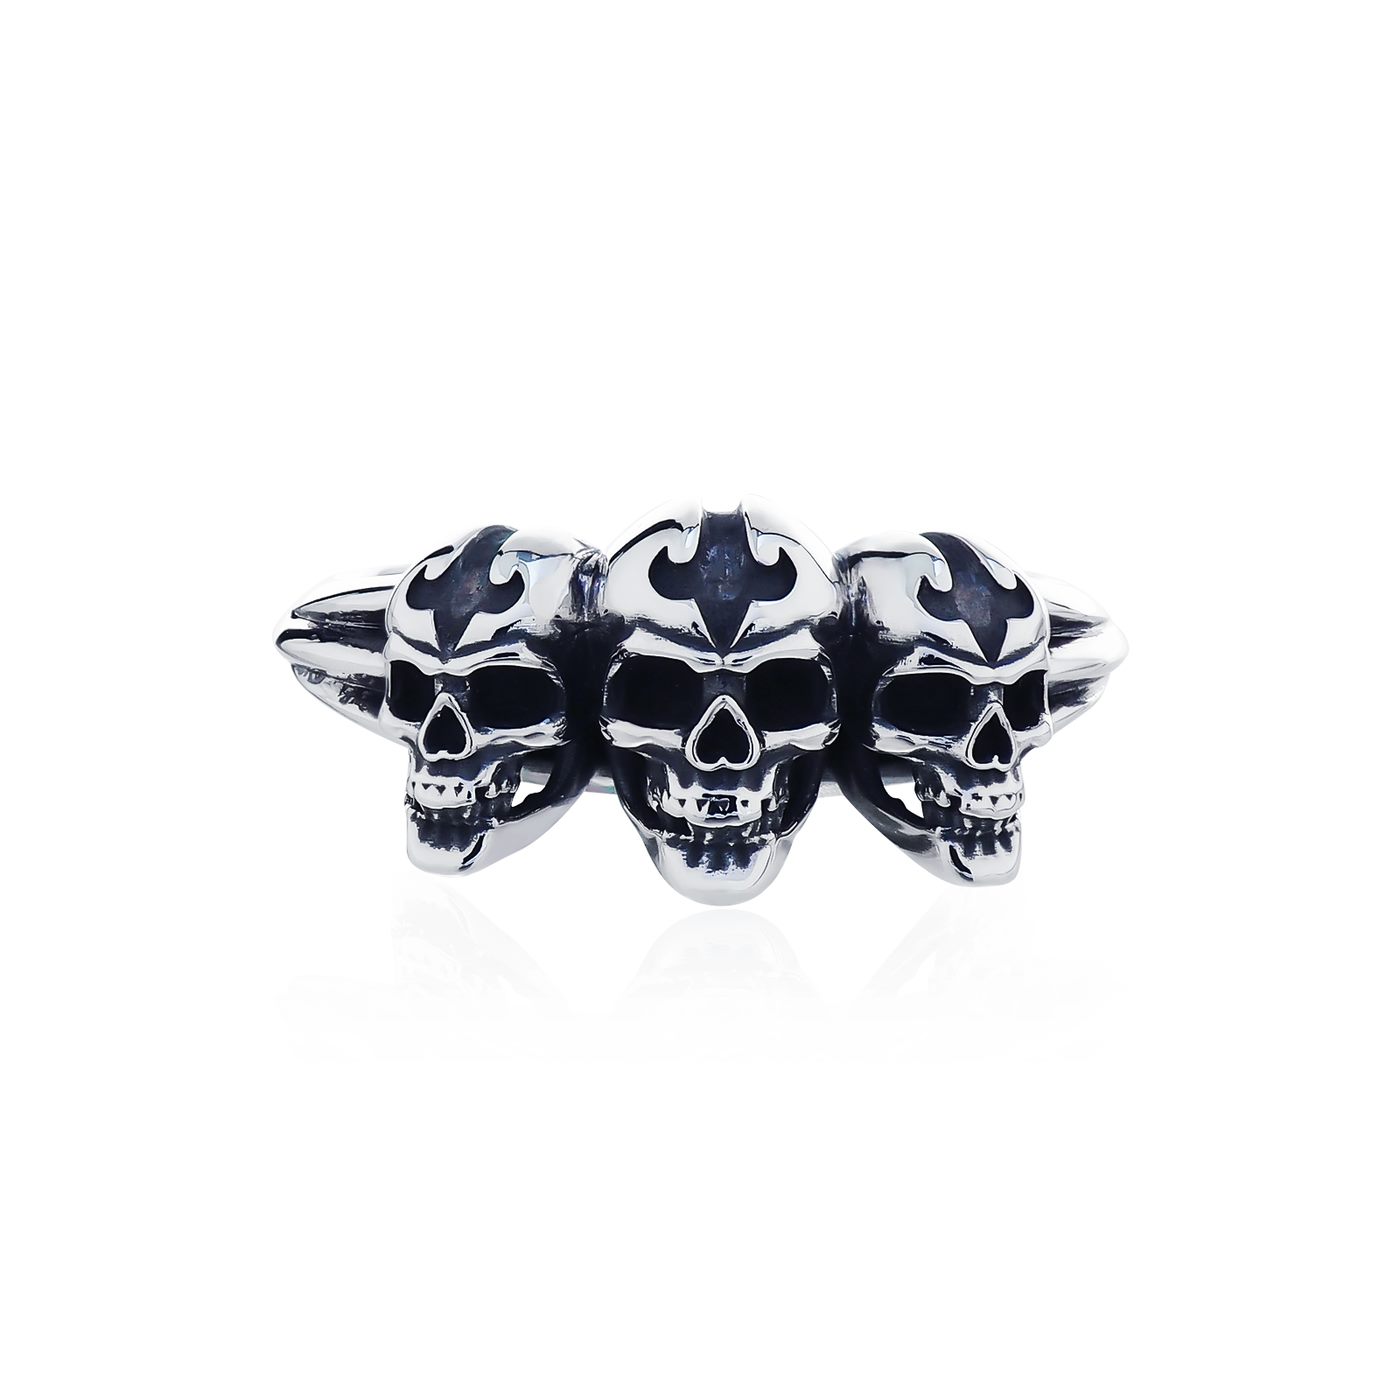 The Ultimate Skull Ring - Rebirth แหวนเงินแท้ 925 แกะมือขัดเงาลงดำ ลายหัวกระโหลกทั้งสามหัวเกิดใหม่ พร้อมสัญลักษณ์หัว Fierce-de-lis